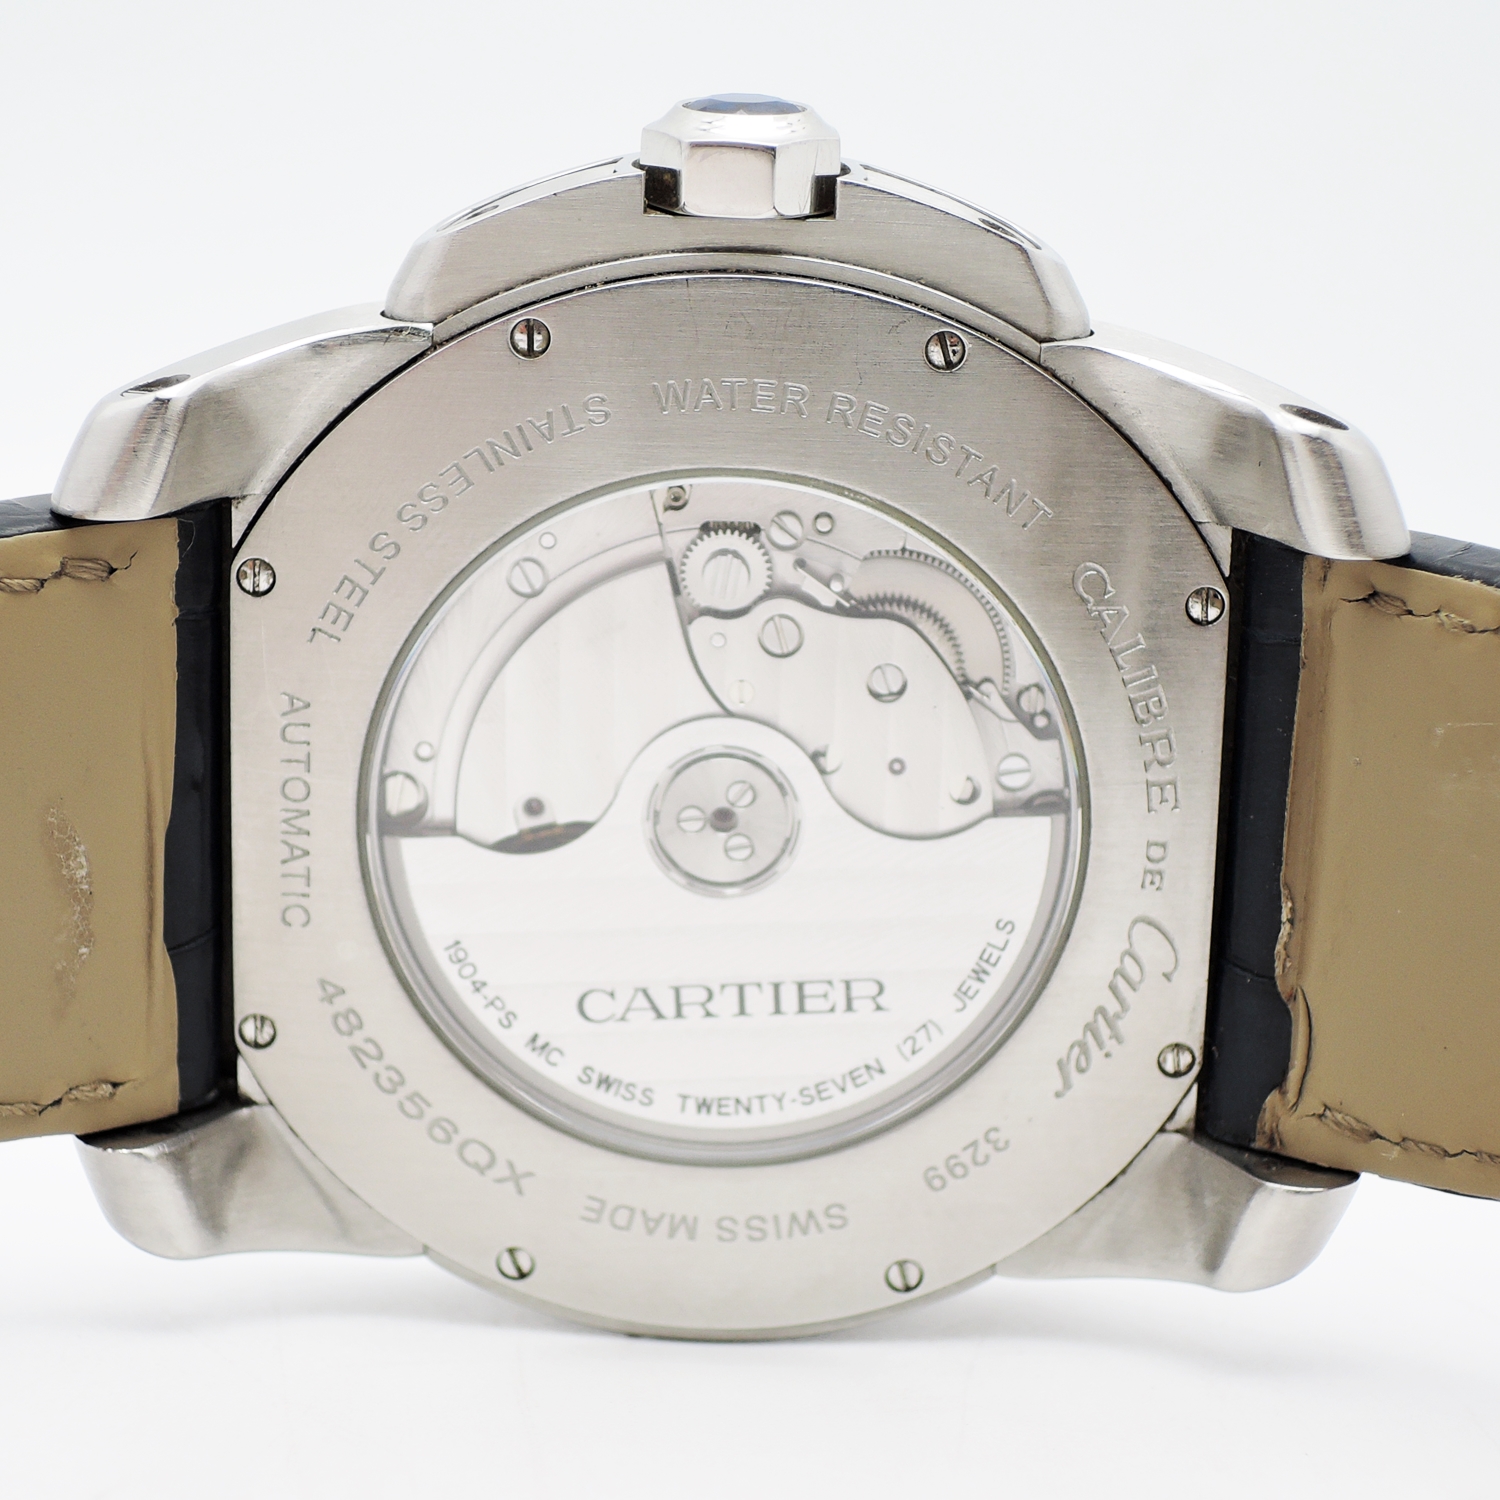 カルティエ カリブル ドゥ カルティエ W7100014 自動巻き ブラック文字盤 Calibre de Cartier AT C002216のイメージ画像